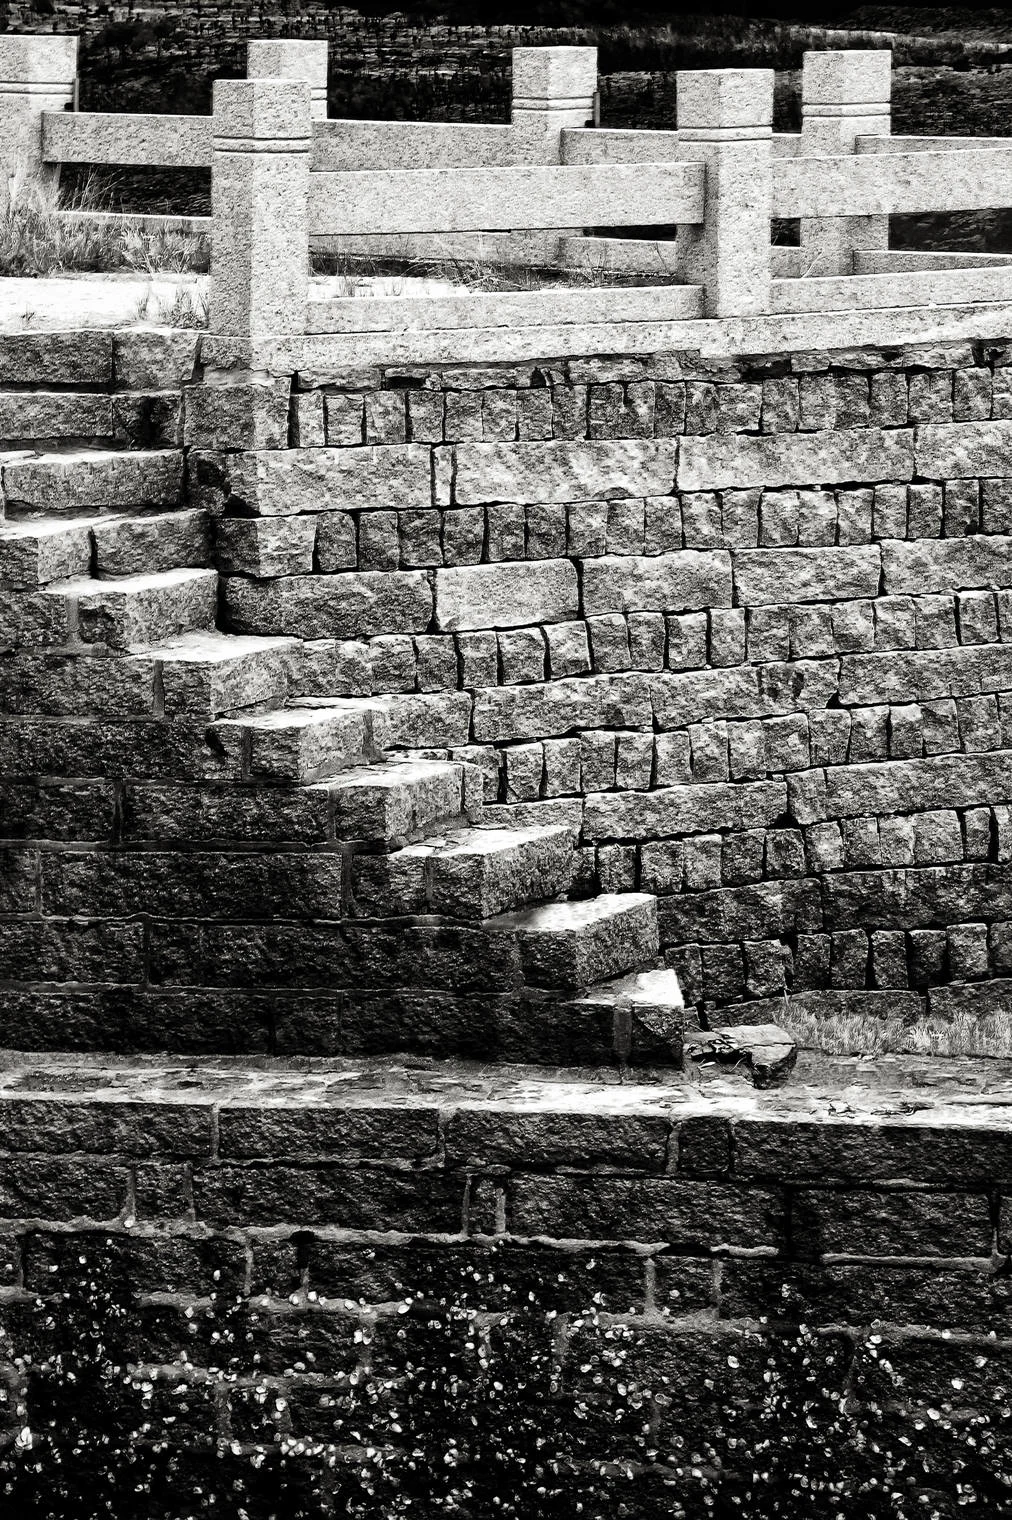 granite steps and wall, luo yang bridge